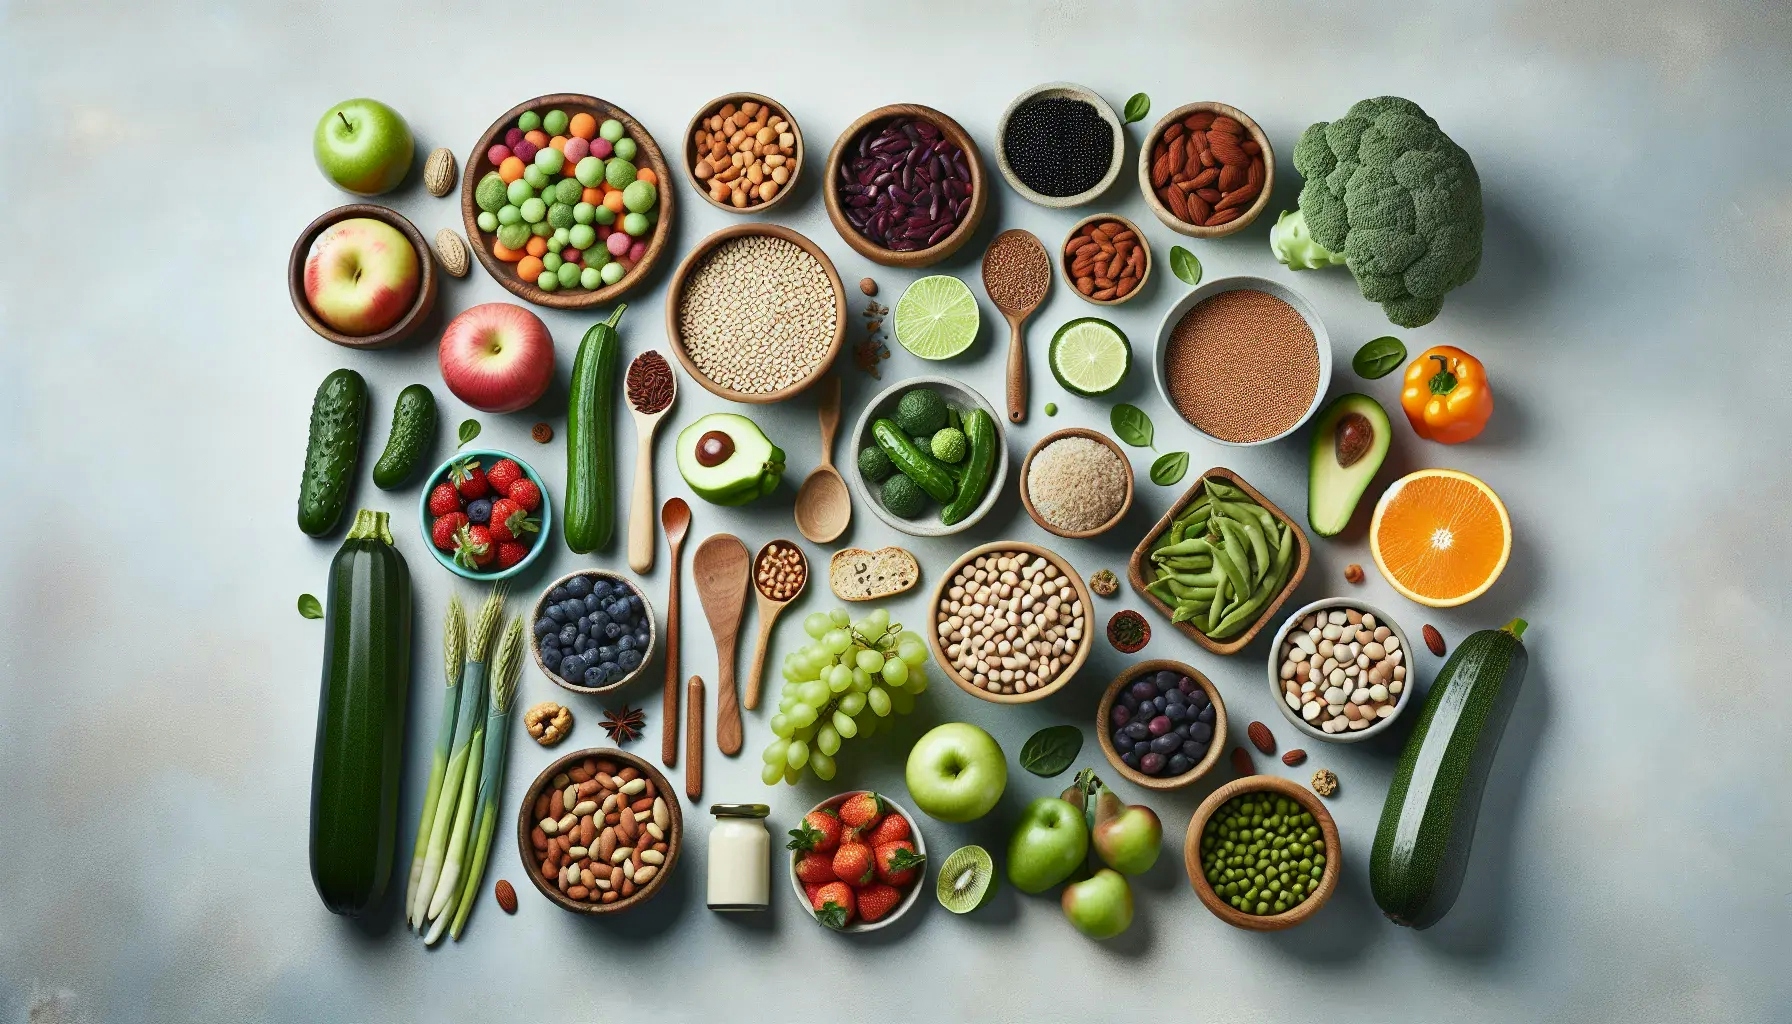 plant-based diet tips for beginners